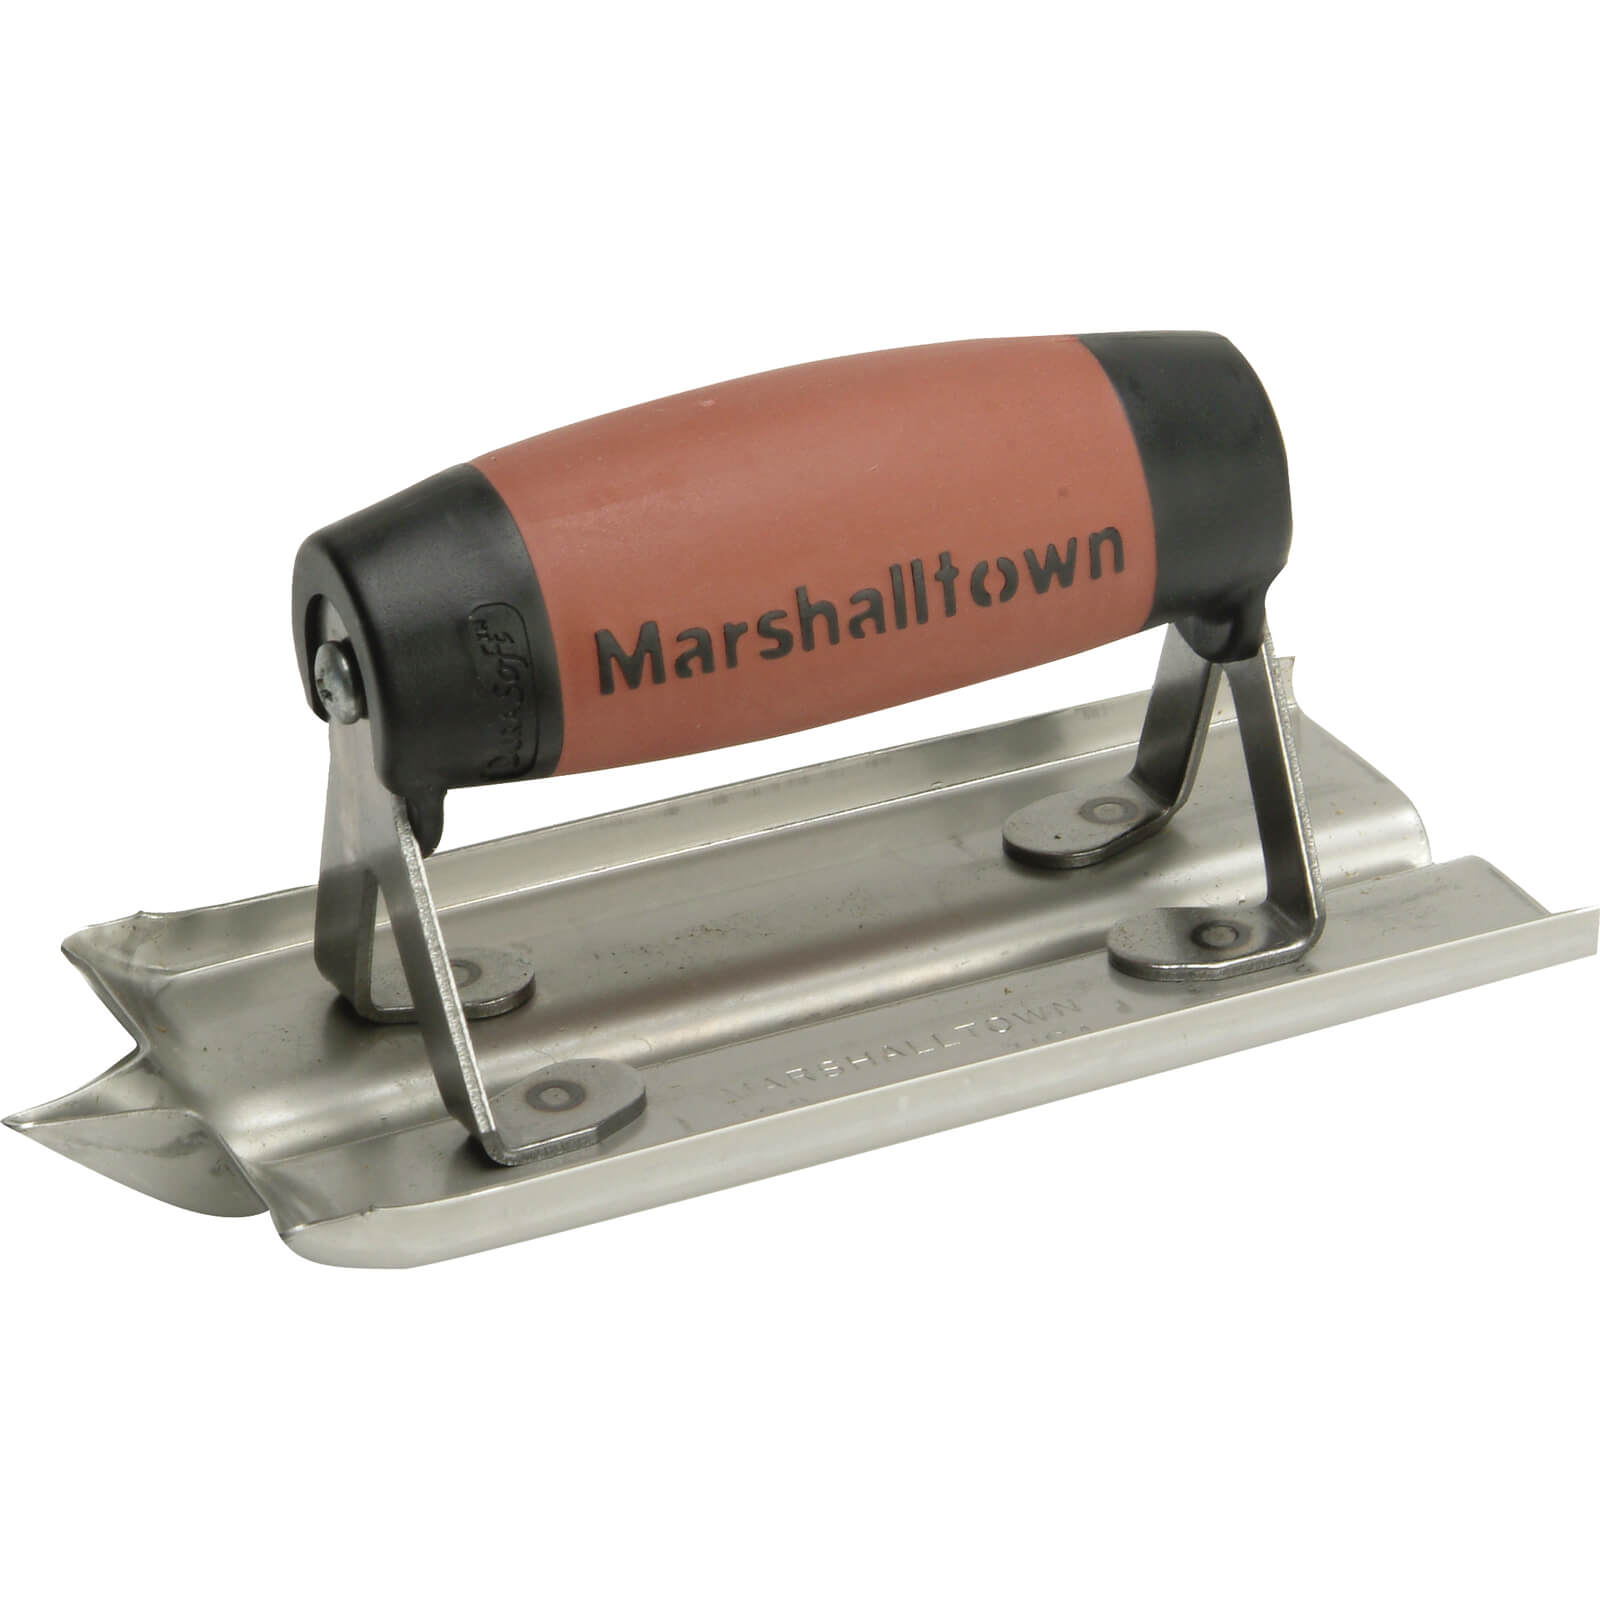 Image of Marshalltown M180D Stainless Steel Cement Edger